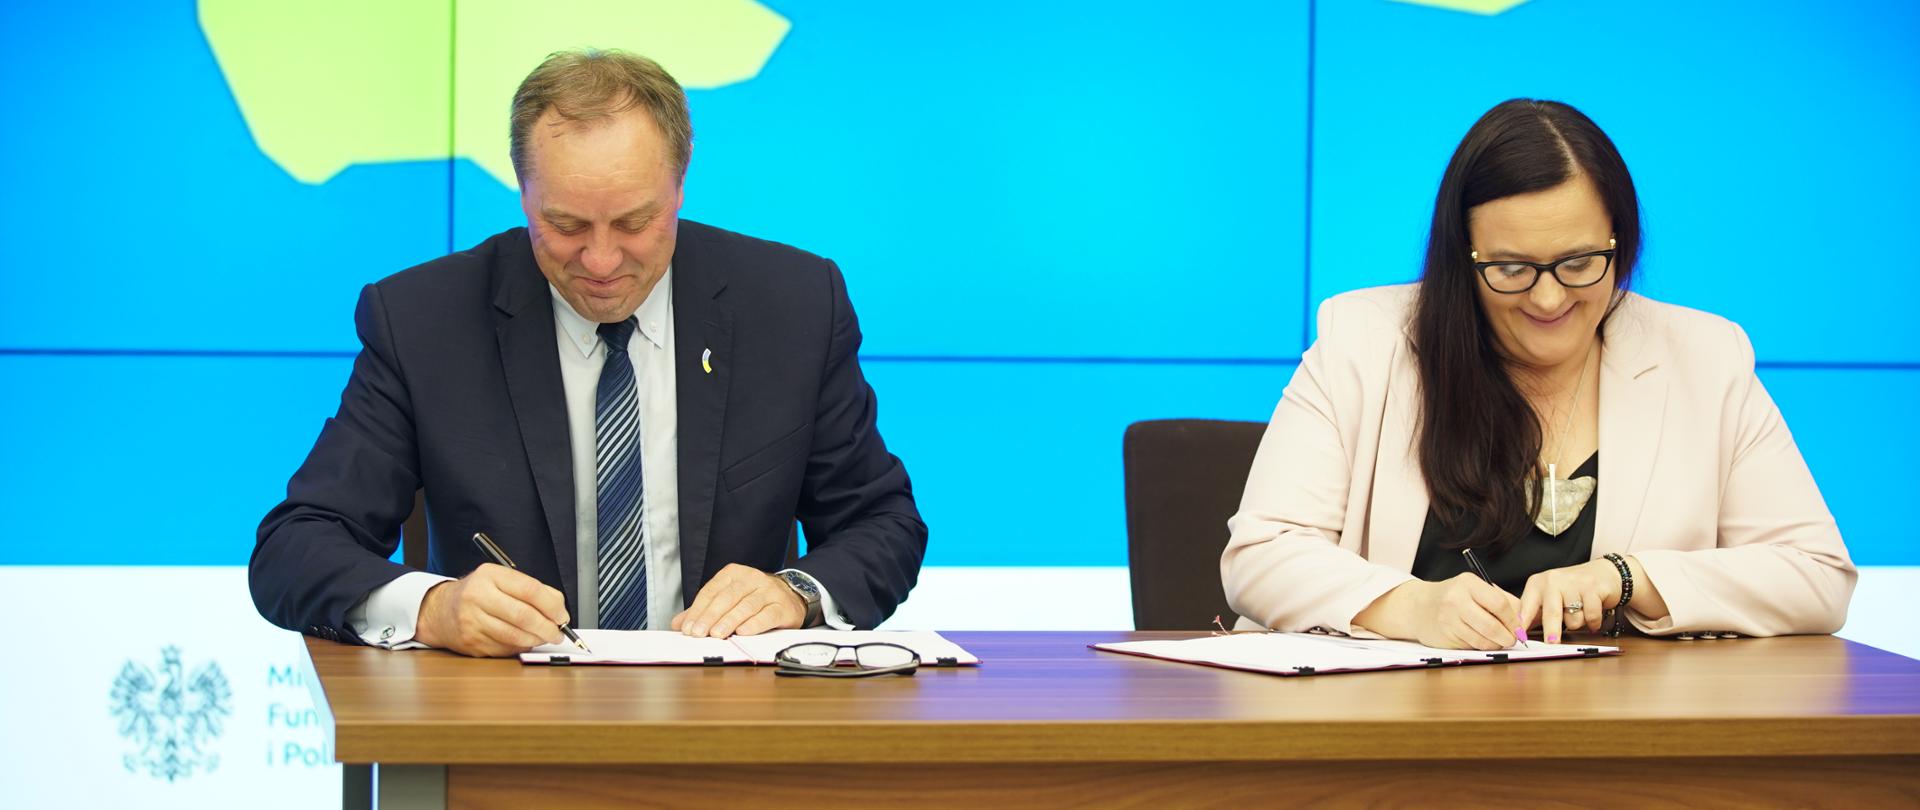 Wiceminister Małgorzata Jarosińska-Jedynak oraz marszałek Mieczysław Struk przy stole podpisują dokumenty